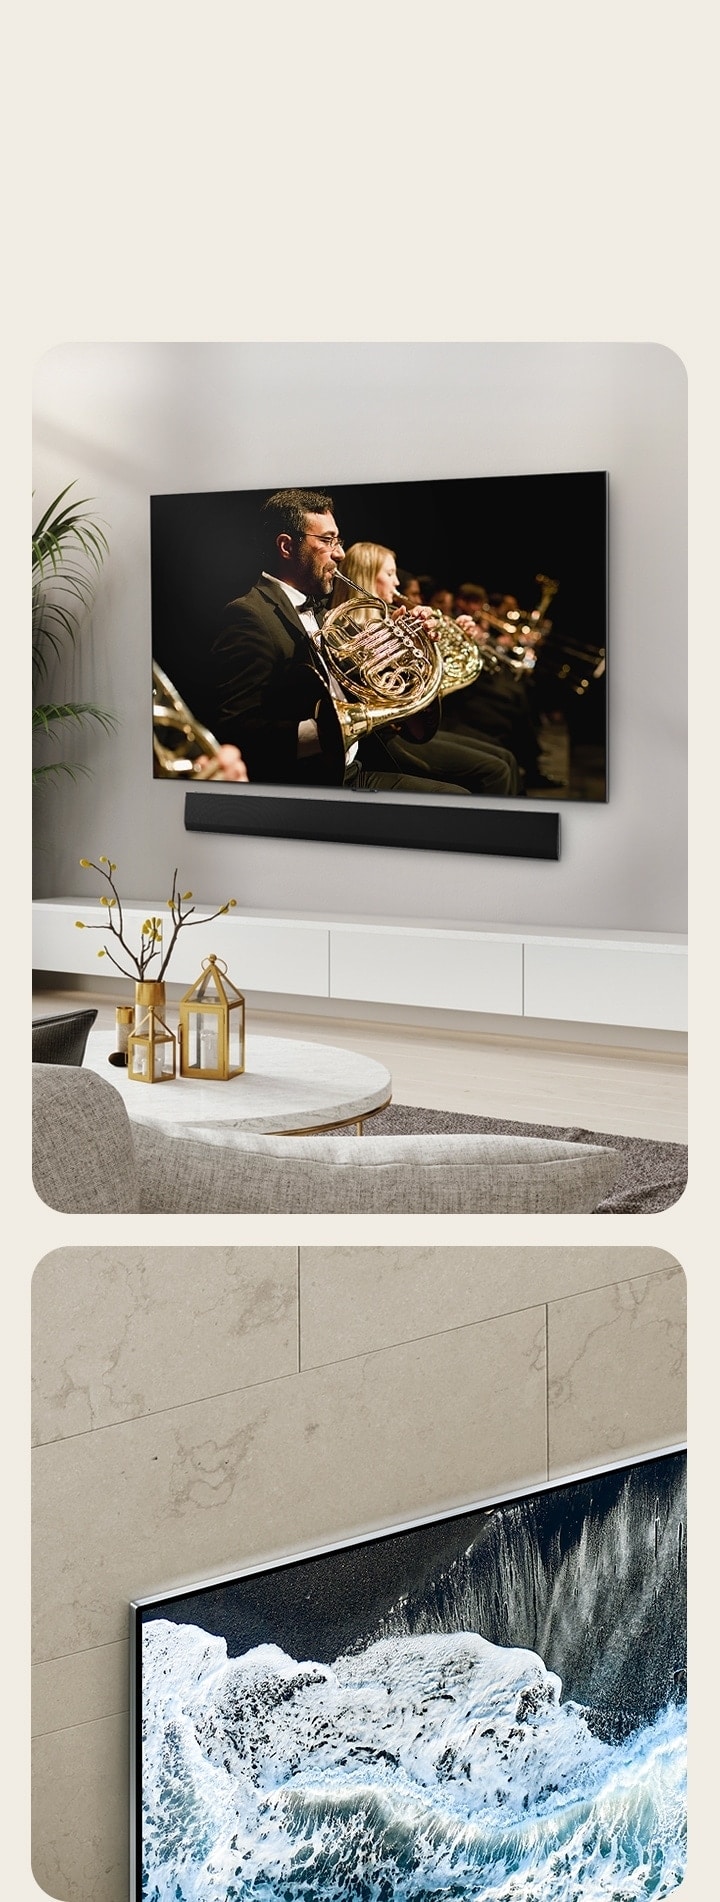 LG OLED G4 智能電視在大理石牆壁的斜視角下，展示了其與牆壁的緊密結合。  在潔淨的生活空間中，LG OLED G4 智能電視和 LG Soundbar 緊掛在牆上，而電視屏幕上播放著管弦樂表演。